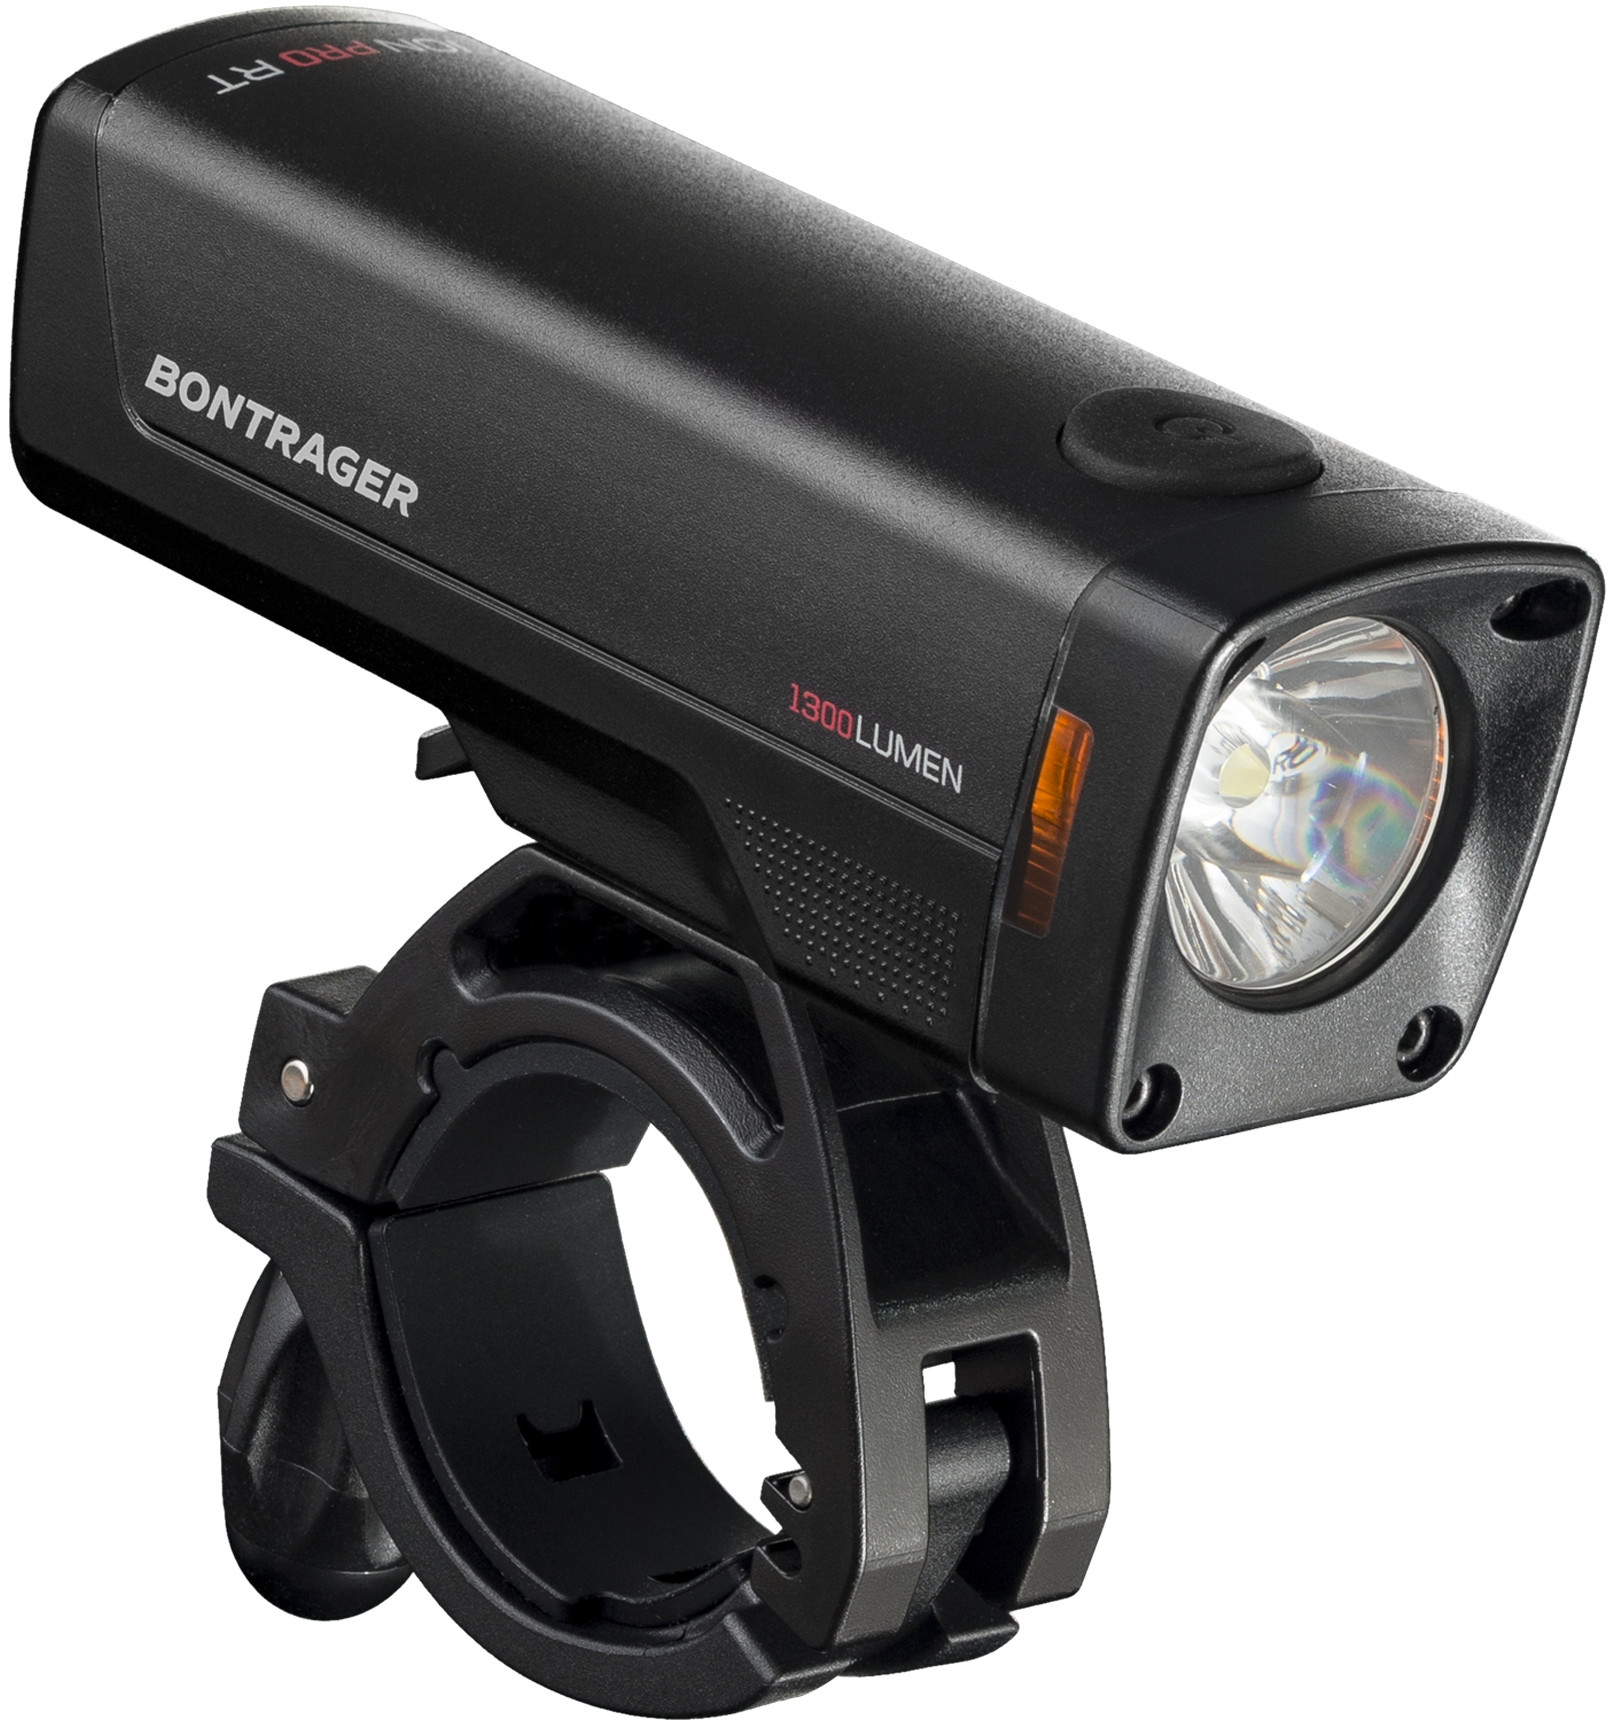 Bontrager Ion Pro RT Front Bike Light - Front Lights - Lights